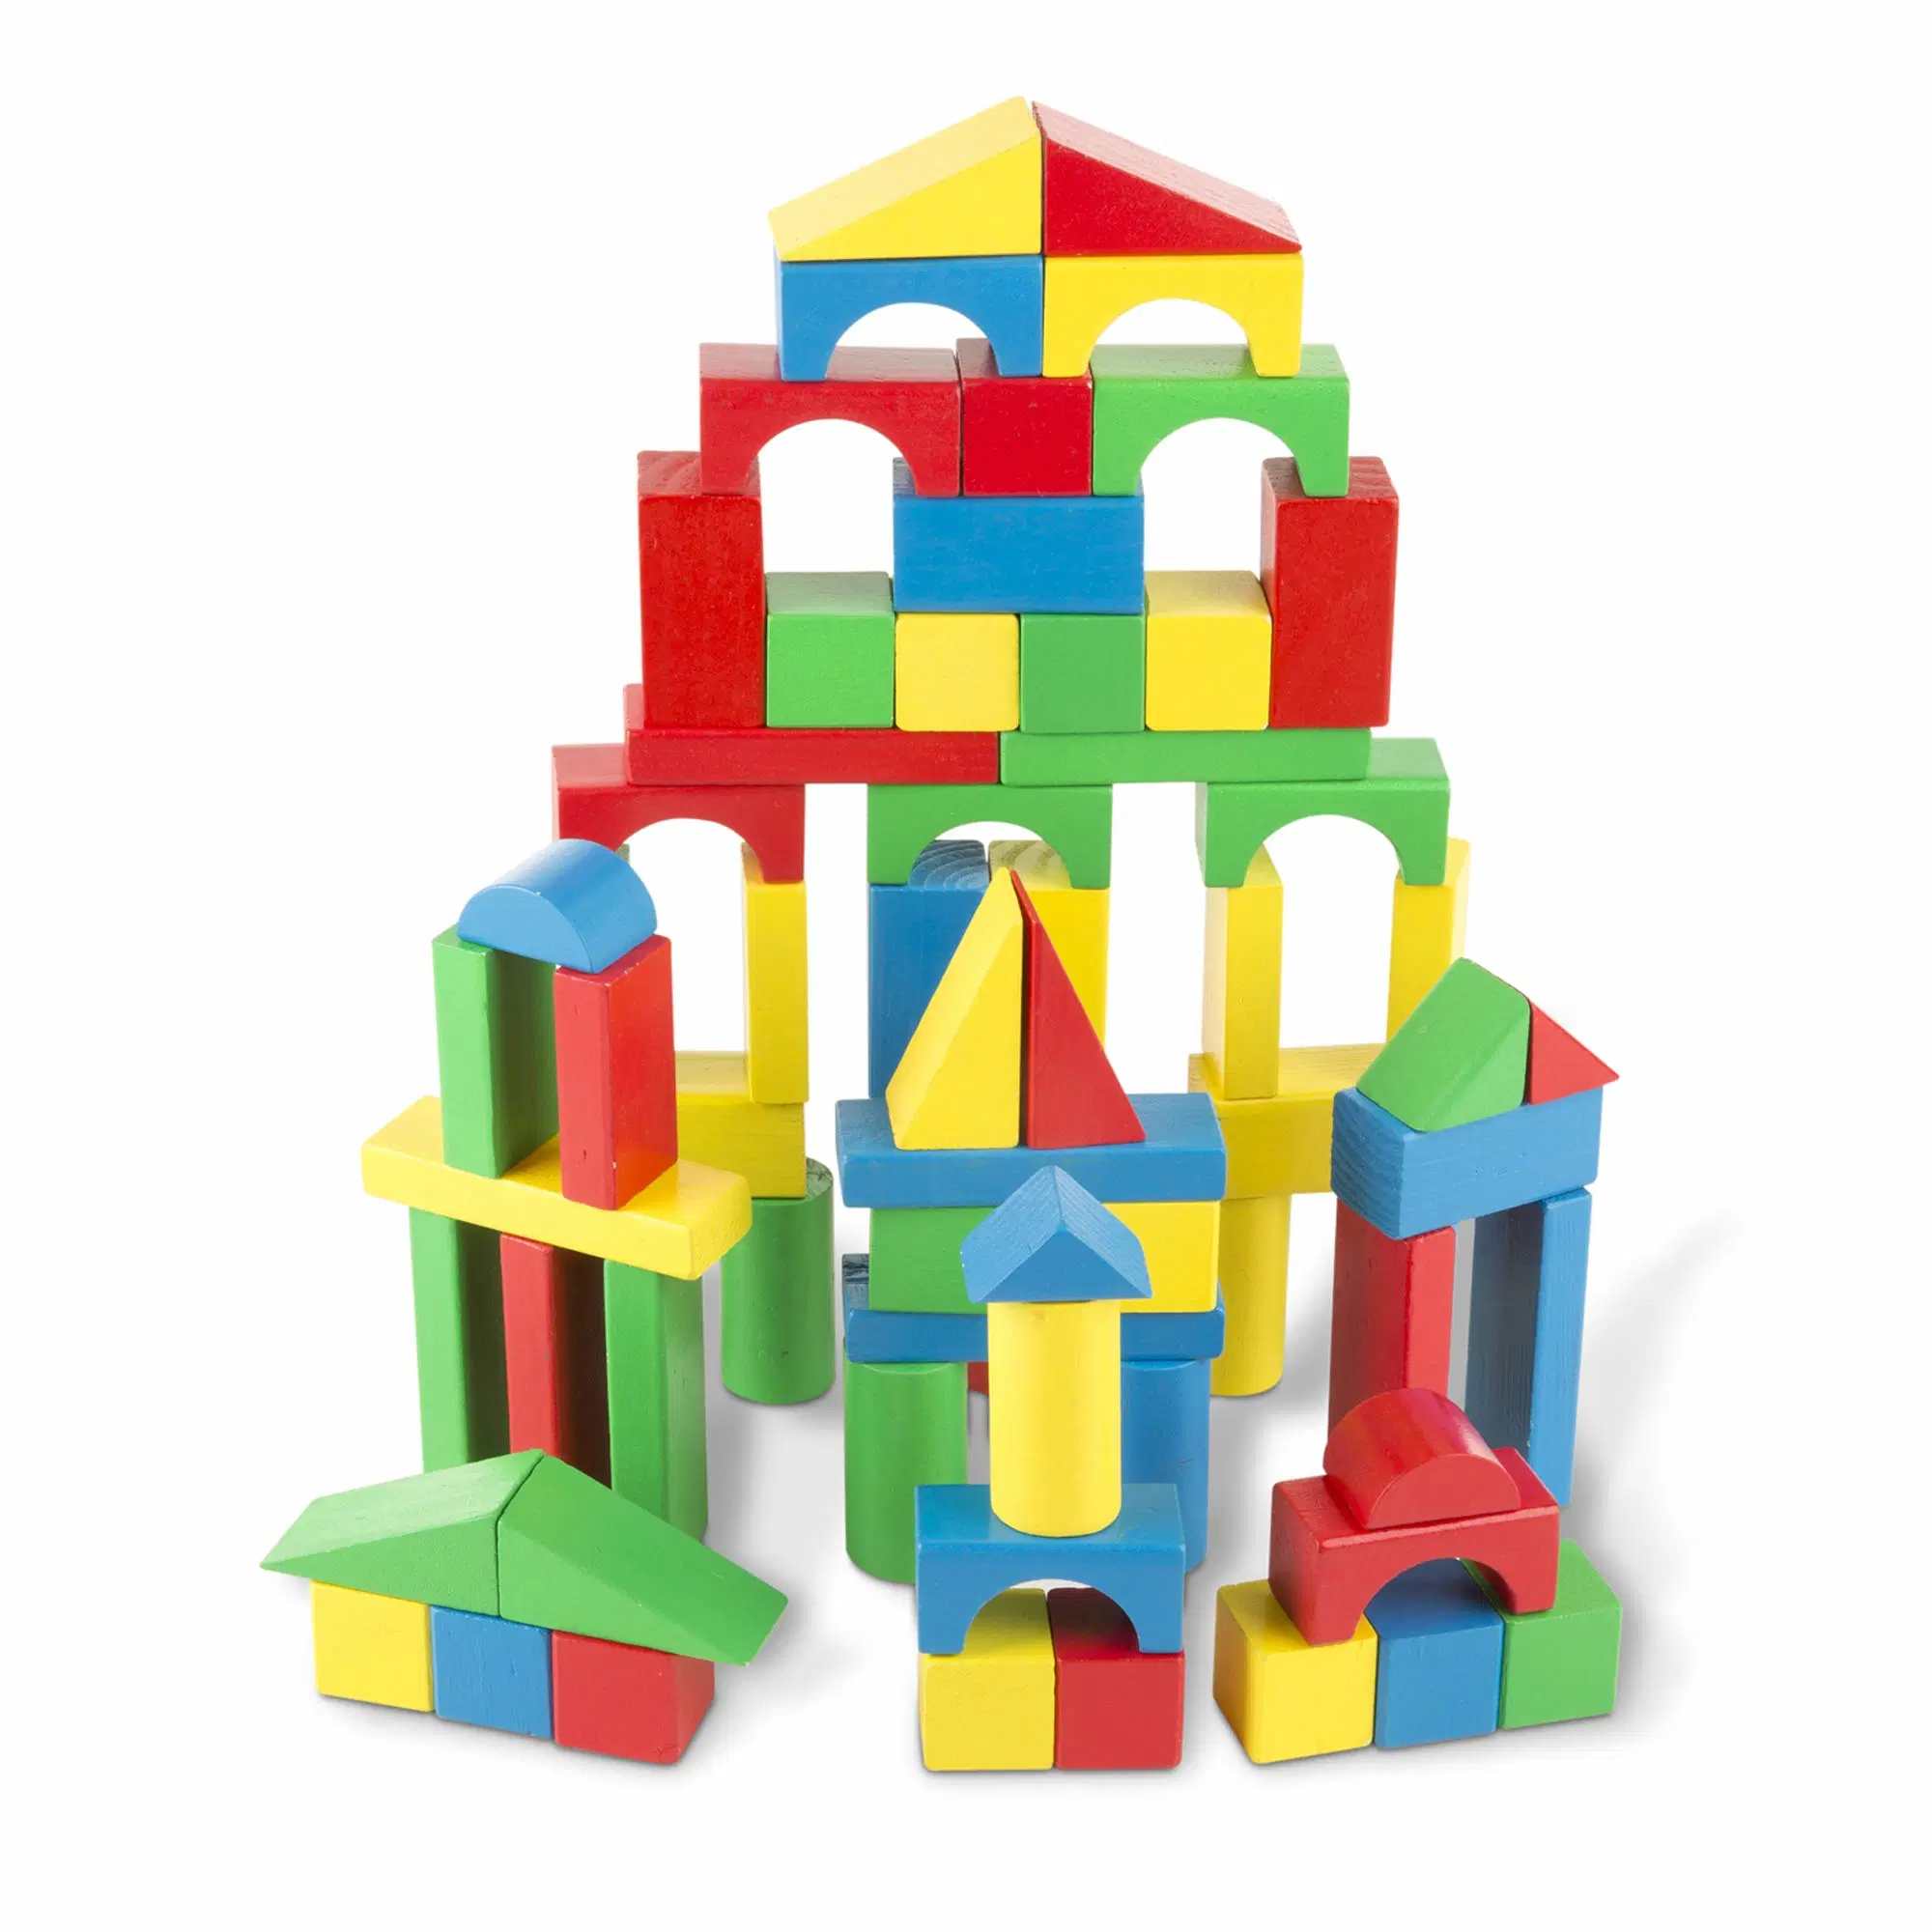 Comercio al por mayor de la bolsa de la construcción de grandes bloques de juguetes Ideas para regalos para niños de edad 1 año